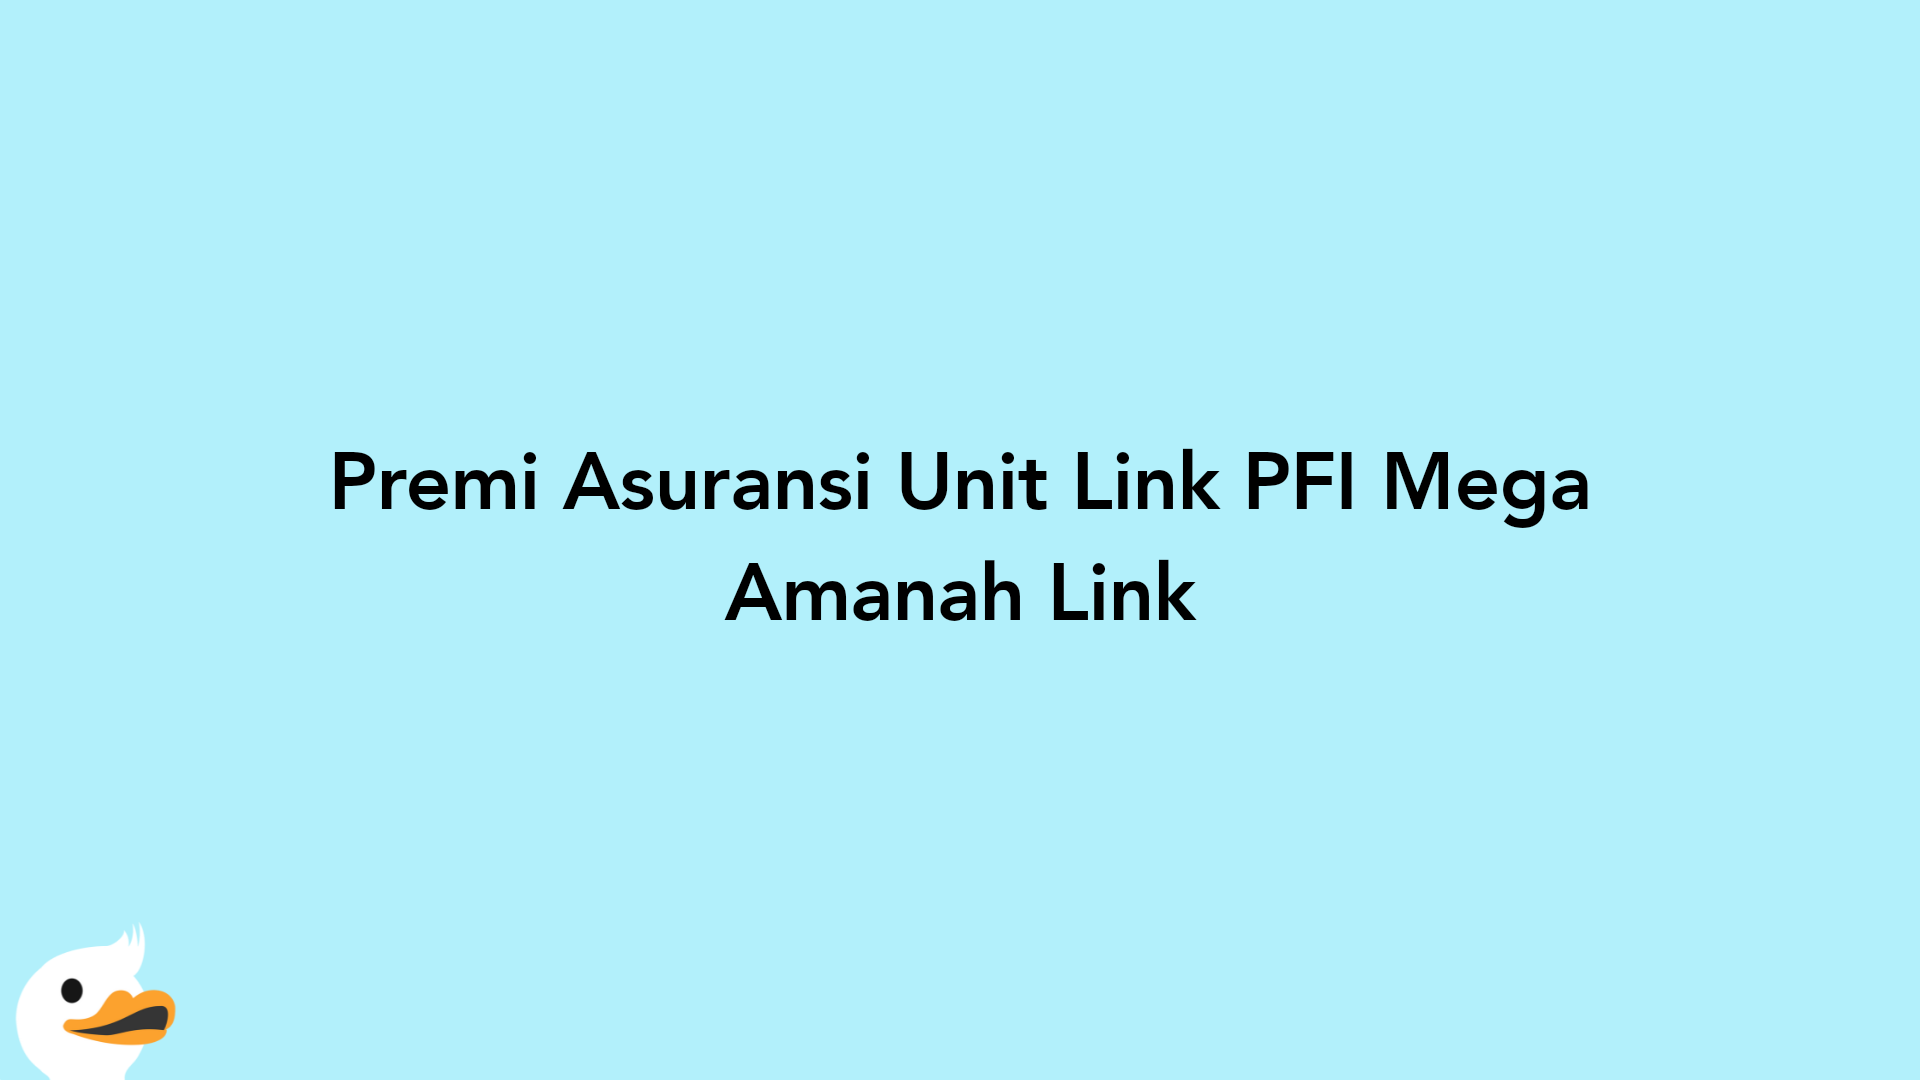 Premi Asuransi Unit Link PFI Mega Amanah Link